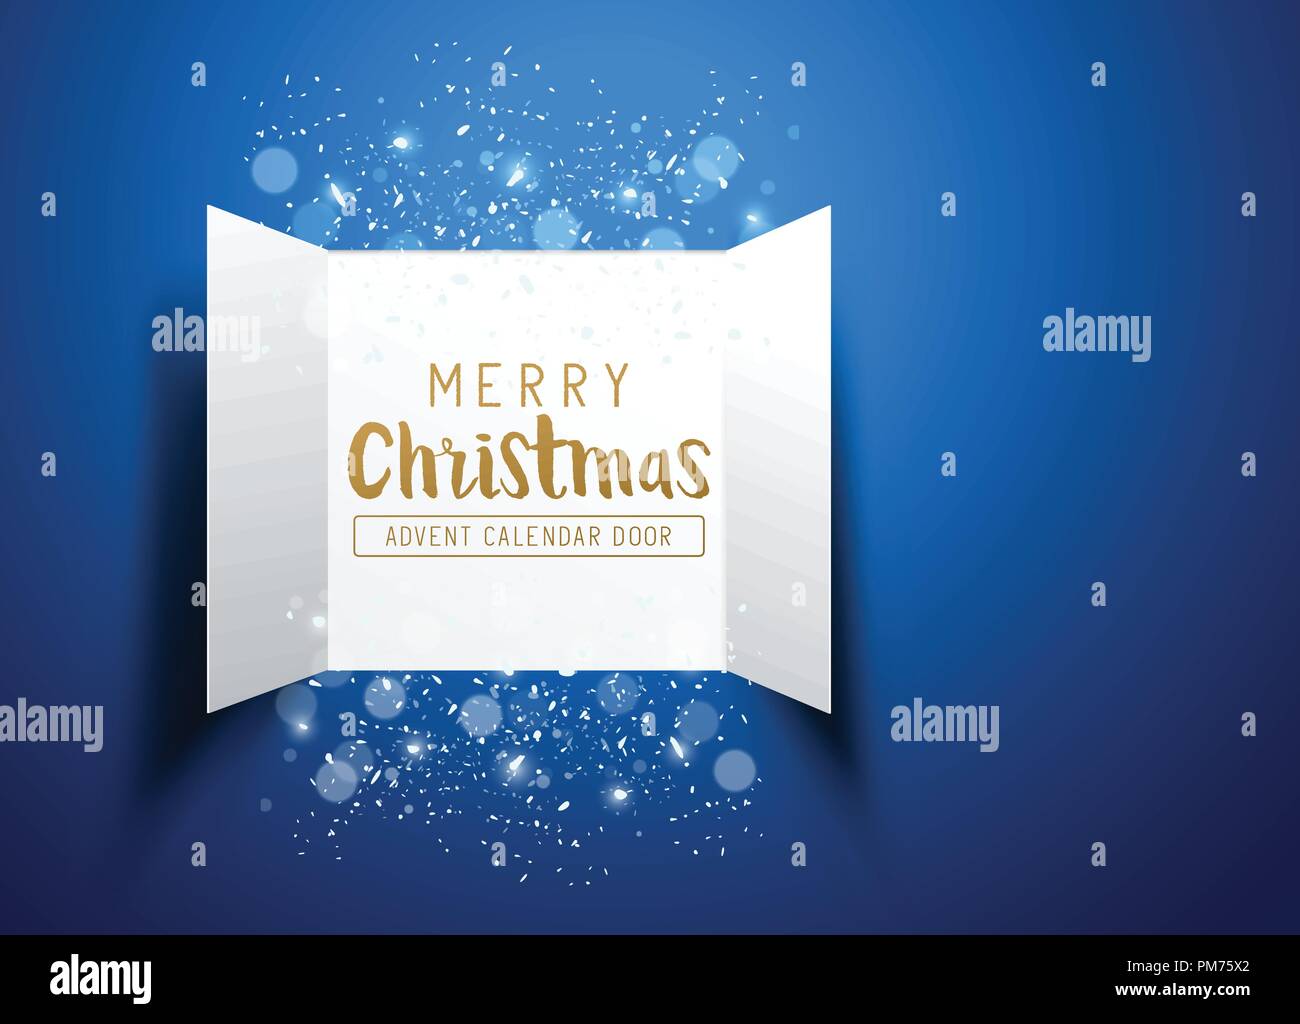 Weihnachten Adventskalender Türen öffnen mit Schneeflocken und Glitter auf blauem Hintergrund. Vector Illustration. Stock Vektor